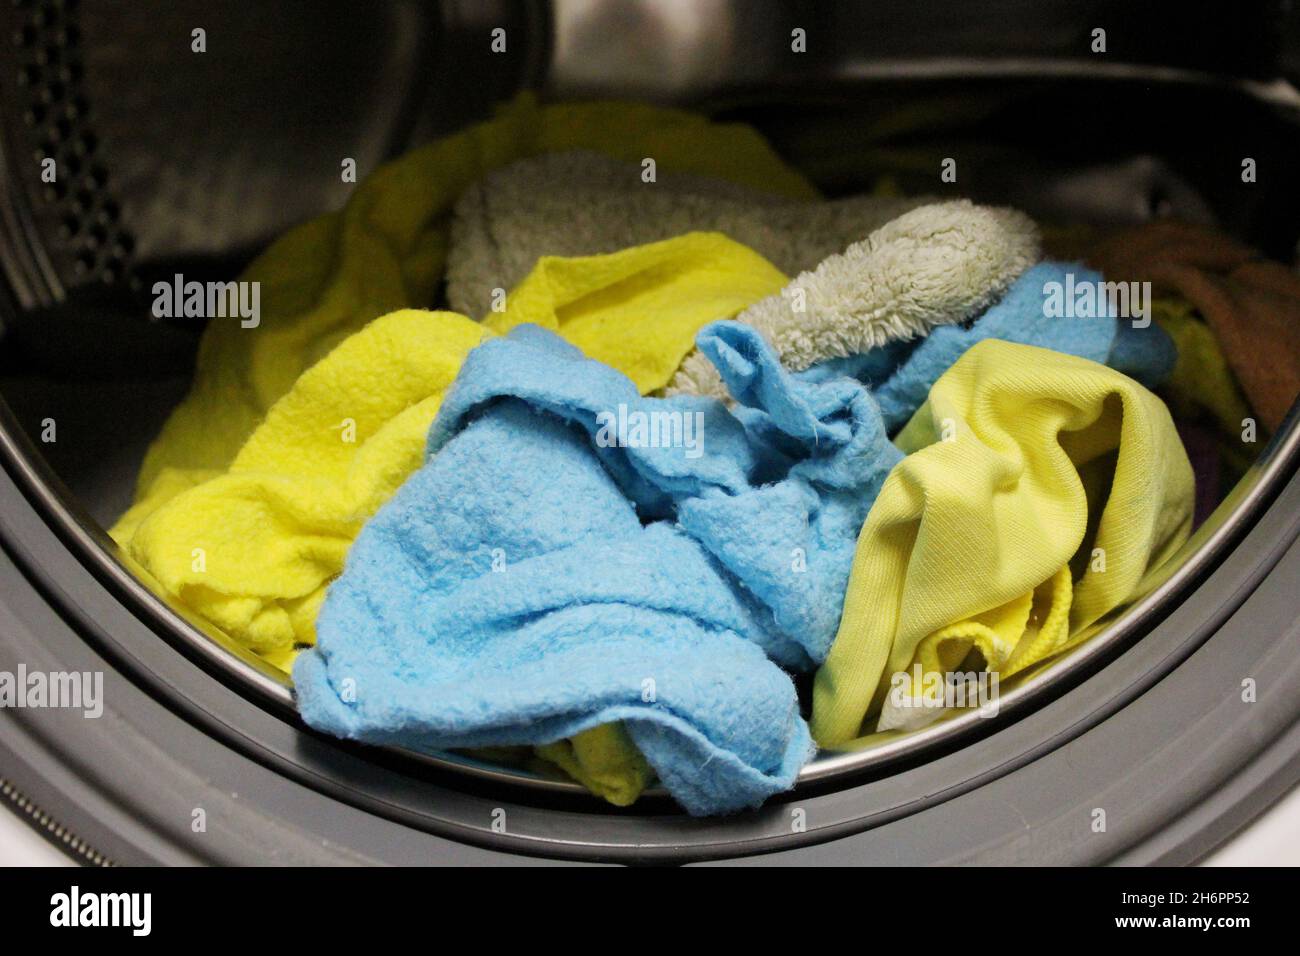 Gewaschene, saubere Putztücher in gelb und blau, die noch in der Waschtrommel der Waschmaschine liegen. Stock Photo